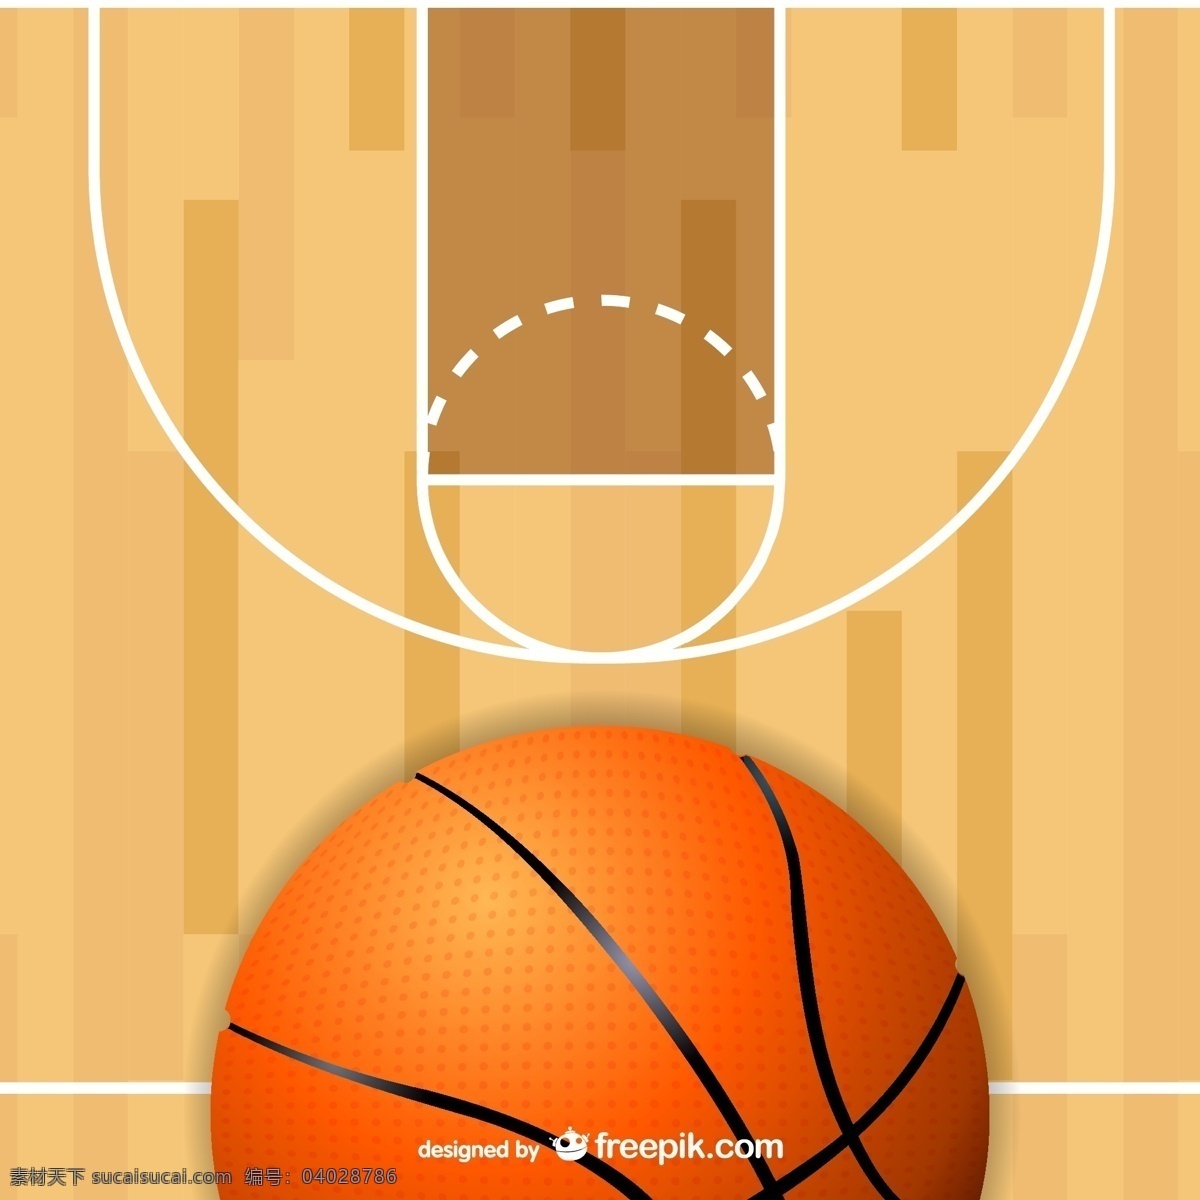 打篮球 篮球 篮球场 篮球运动 其他矢量 矢量篮球 矢量素材 矢量图片 投篮 运动 矢量 模板下载 basketball psd源文件